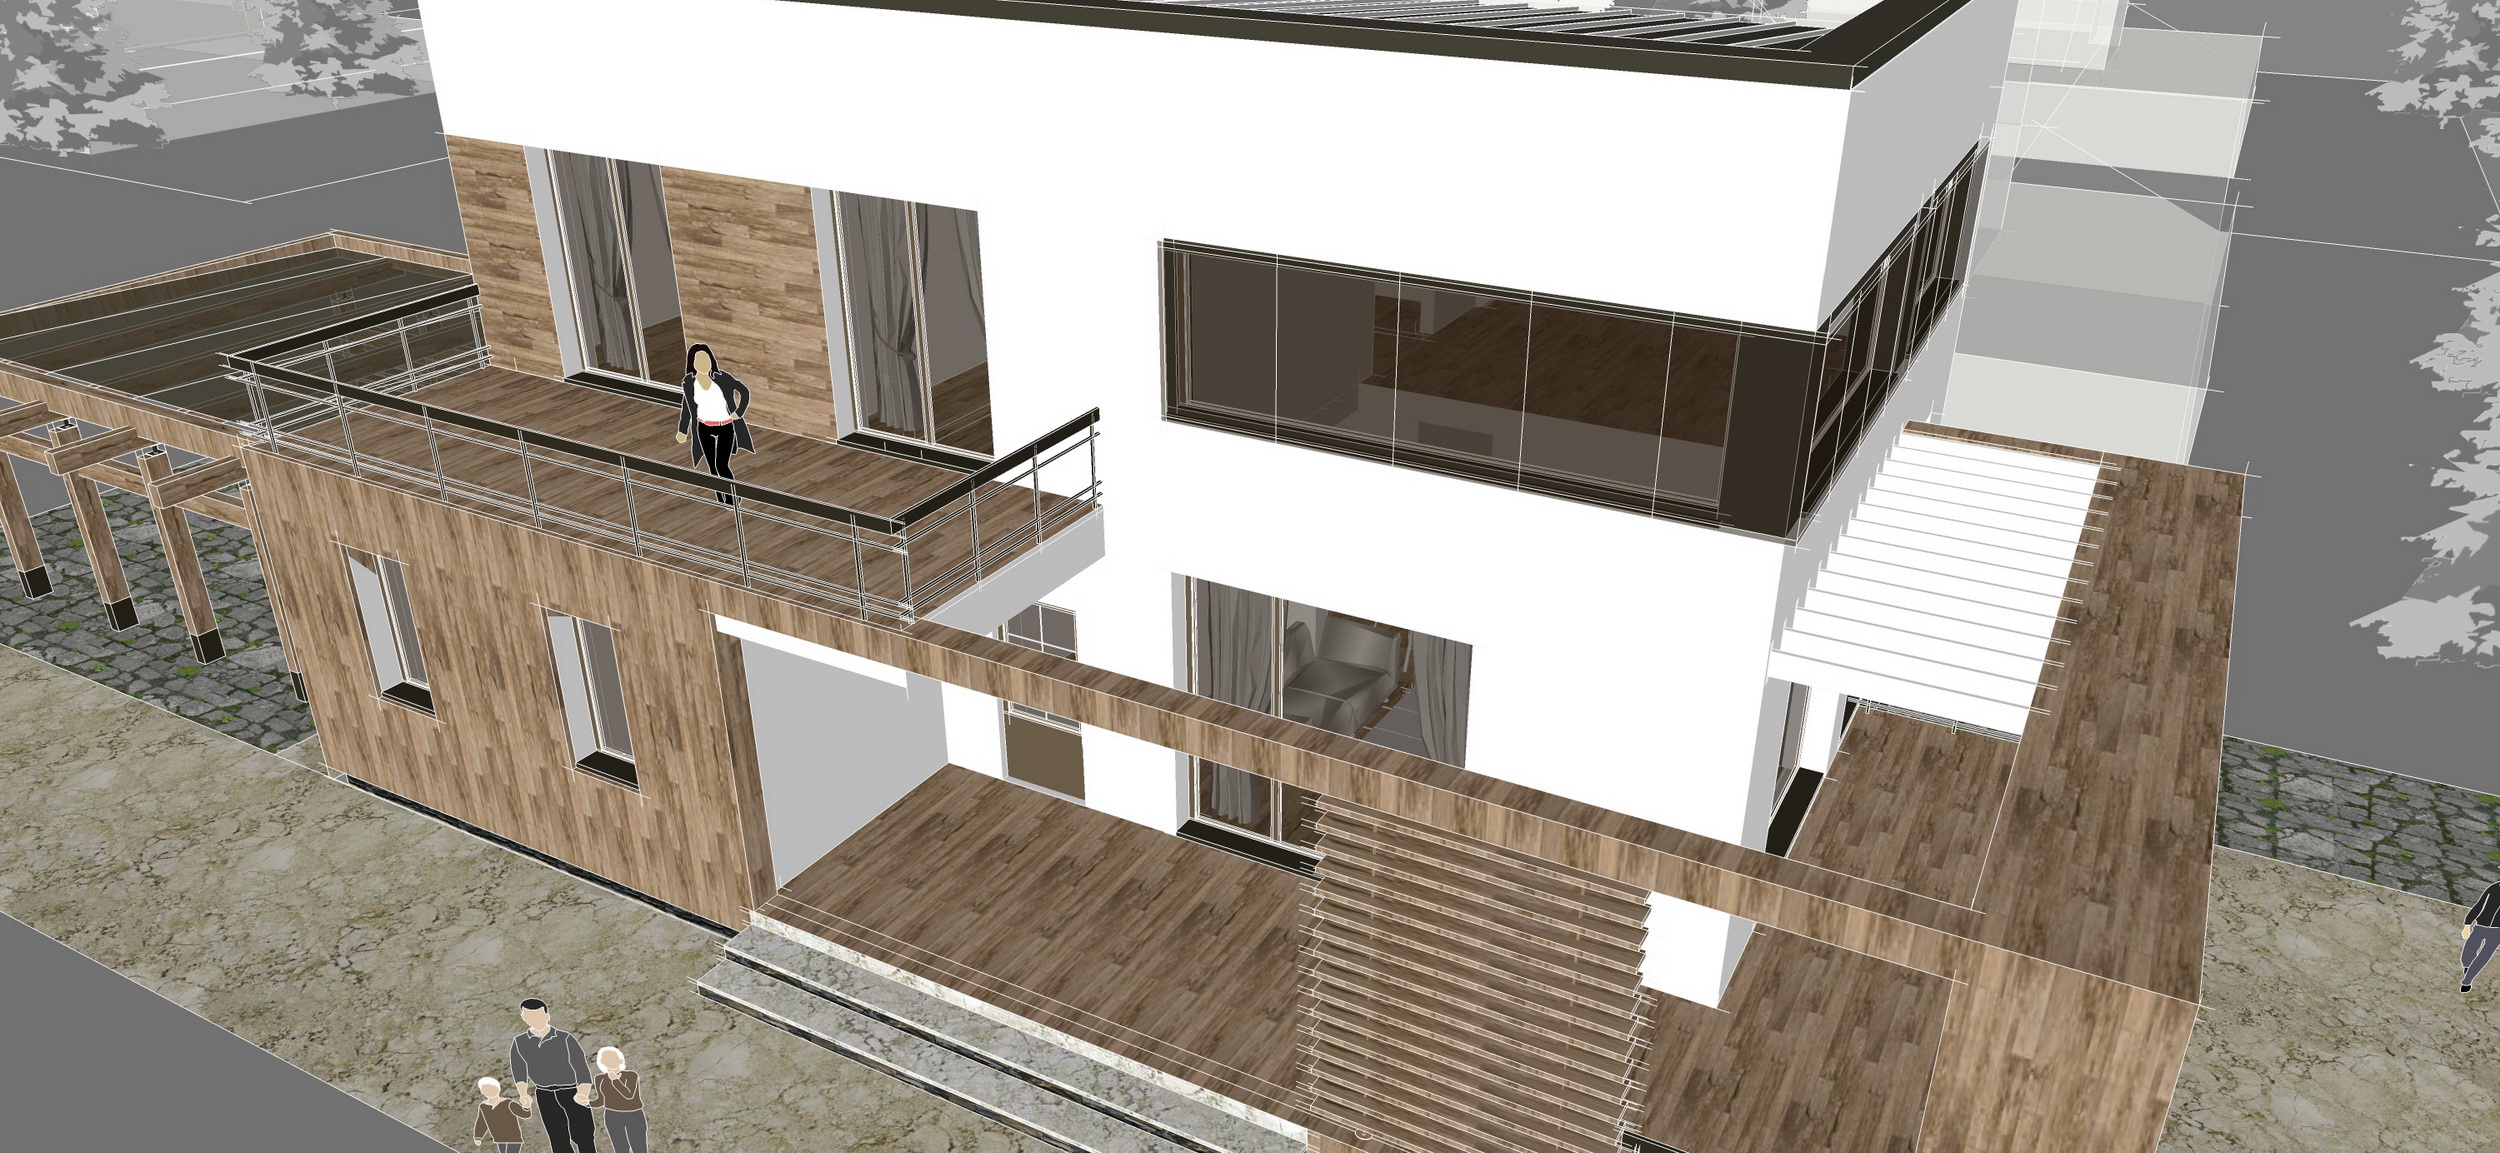 ДИЗАЙН фасада здания с подбором отделочных материалов, качественная визуализация объекта (3D проект) - фотография